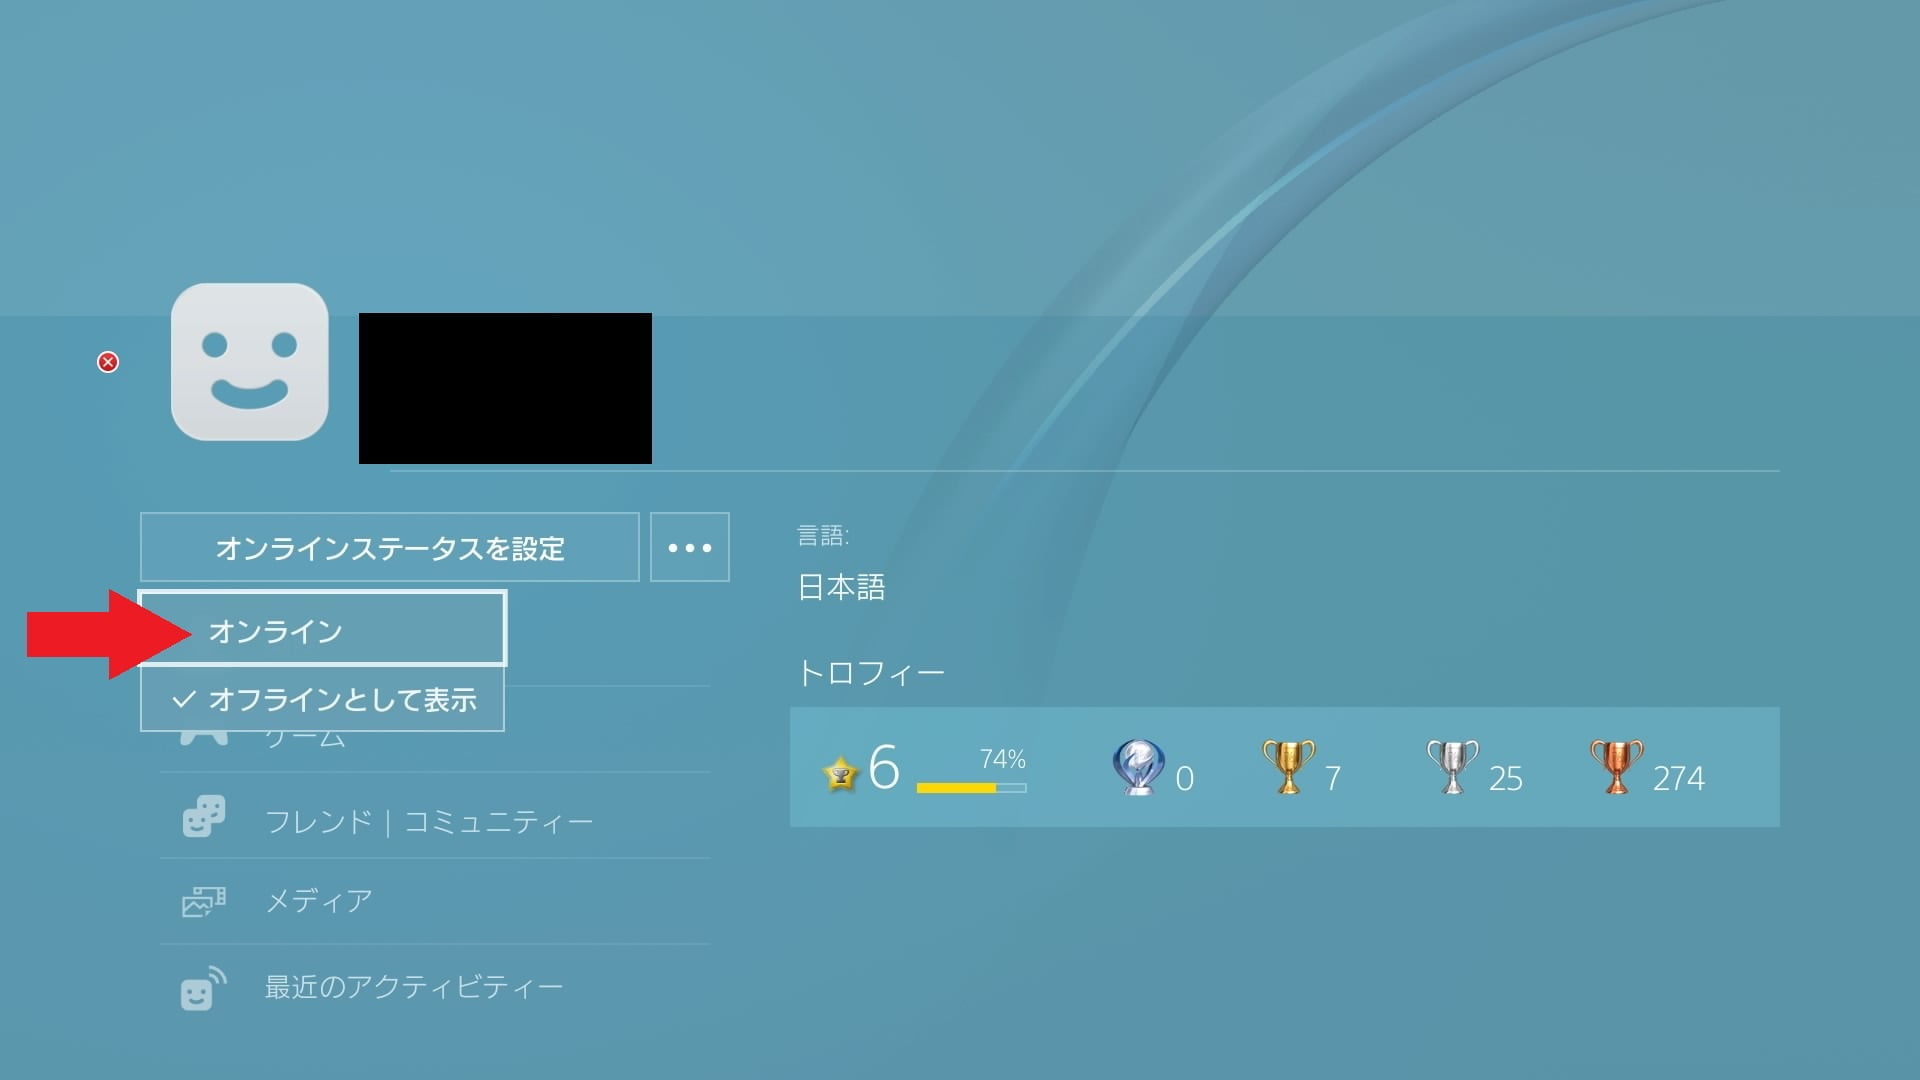 PS4のプロフィールページ